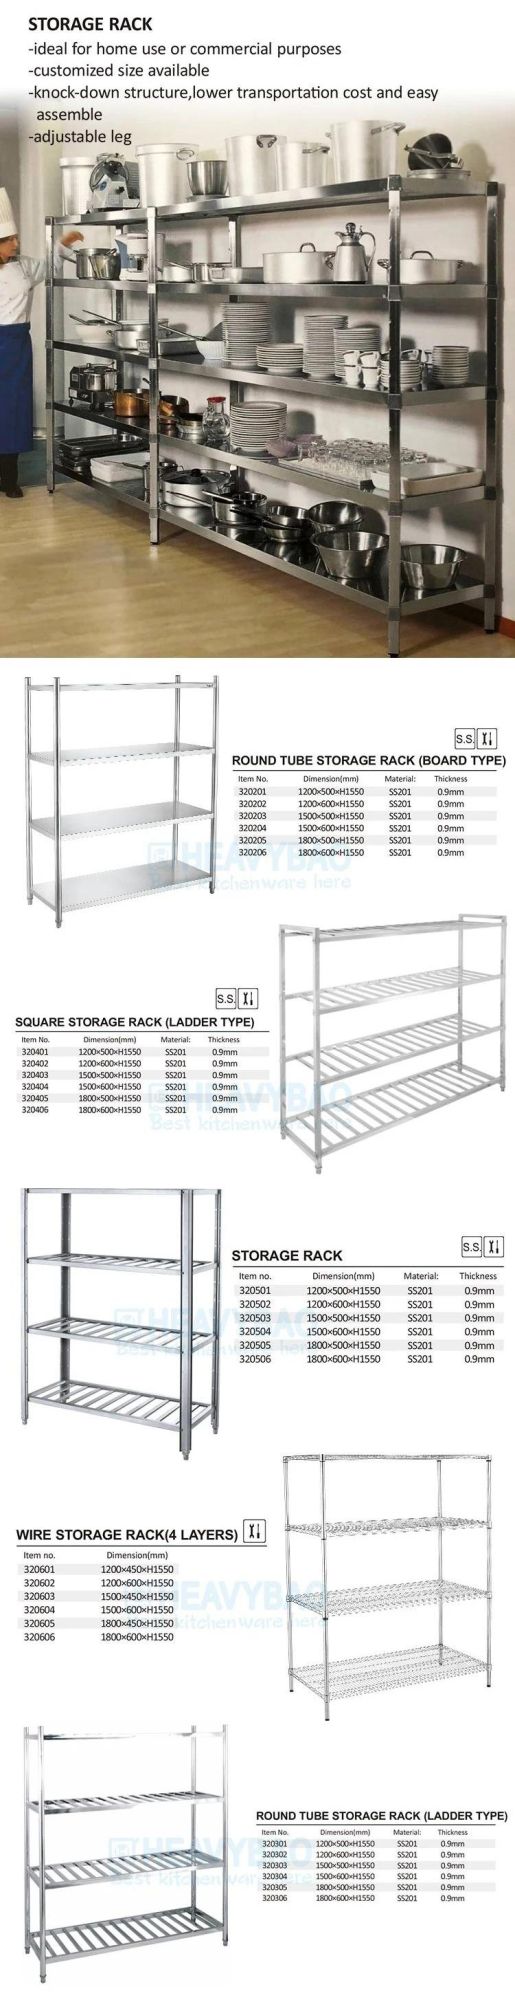 Heavybao Stainless Steel Kitchen Home Storage Organizers Holder Shelf Storage Rack